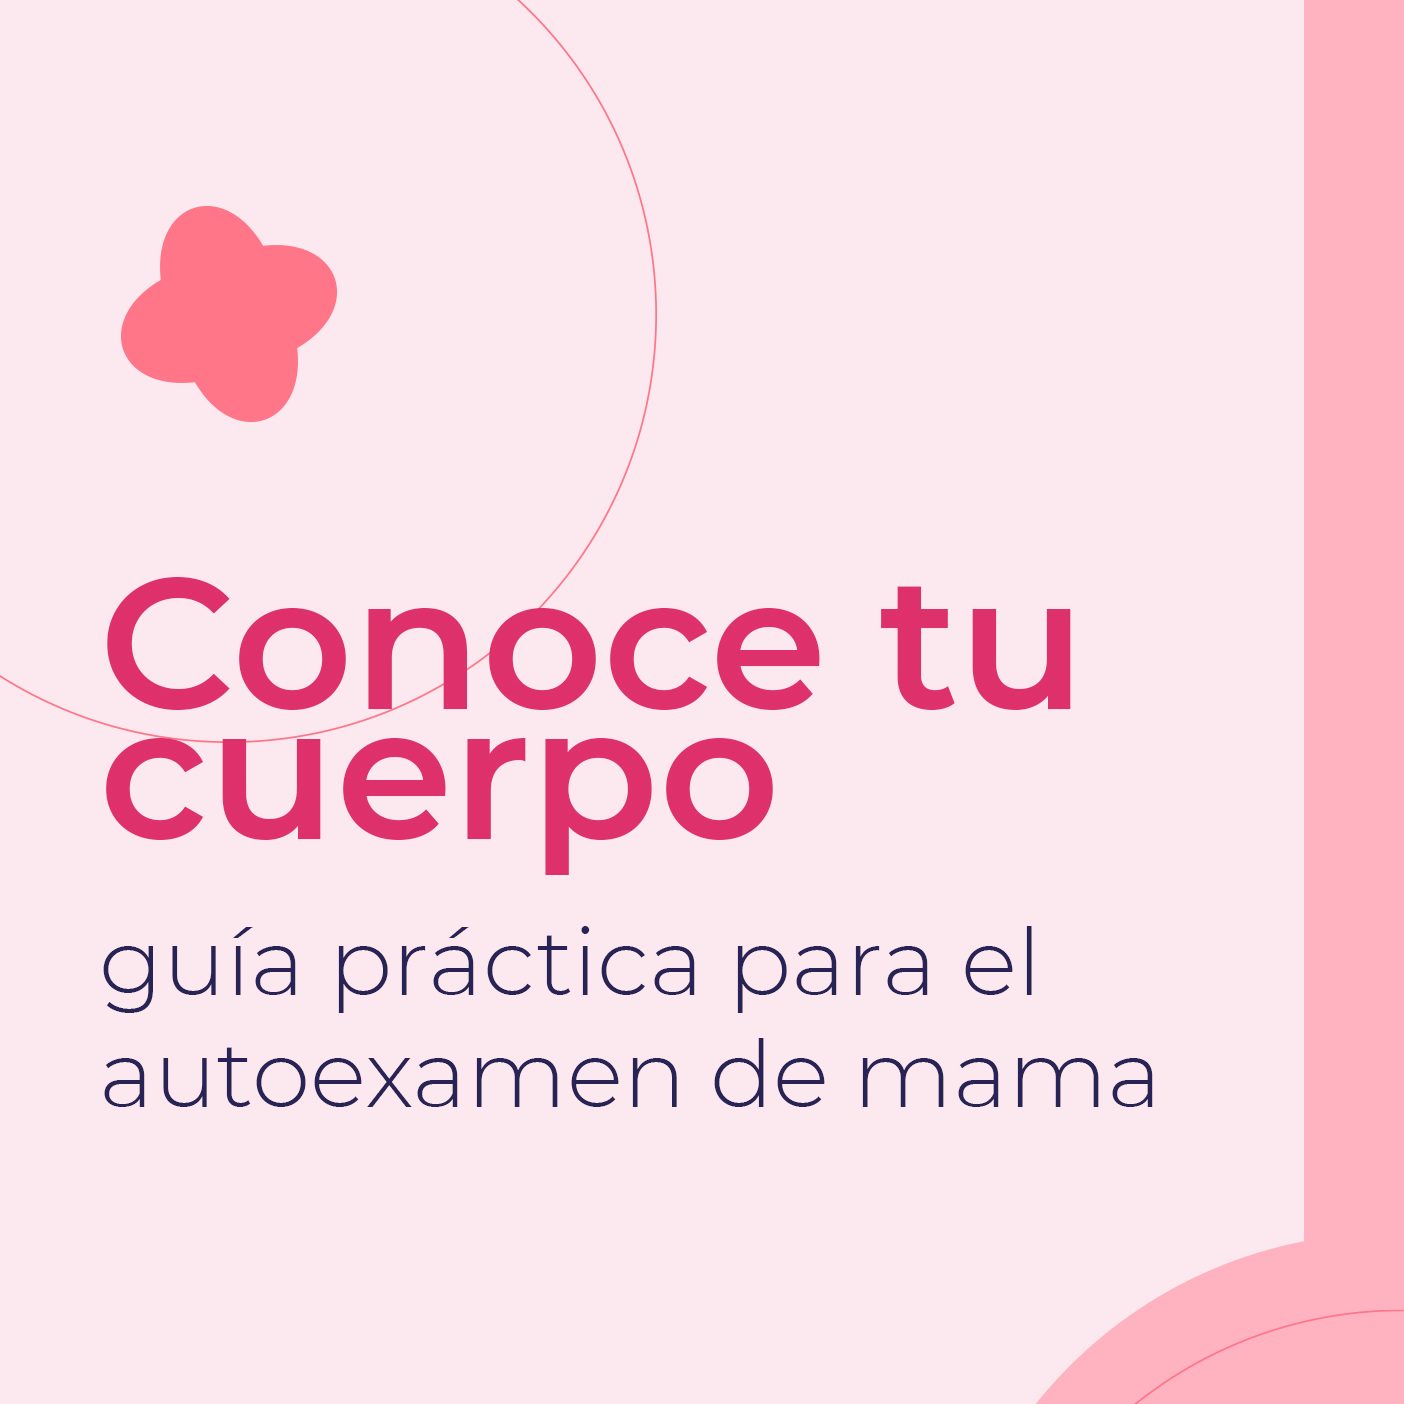 Guía práctica para el autoexamen de mama